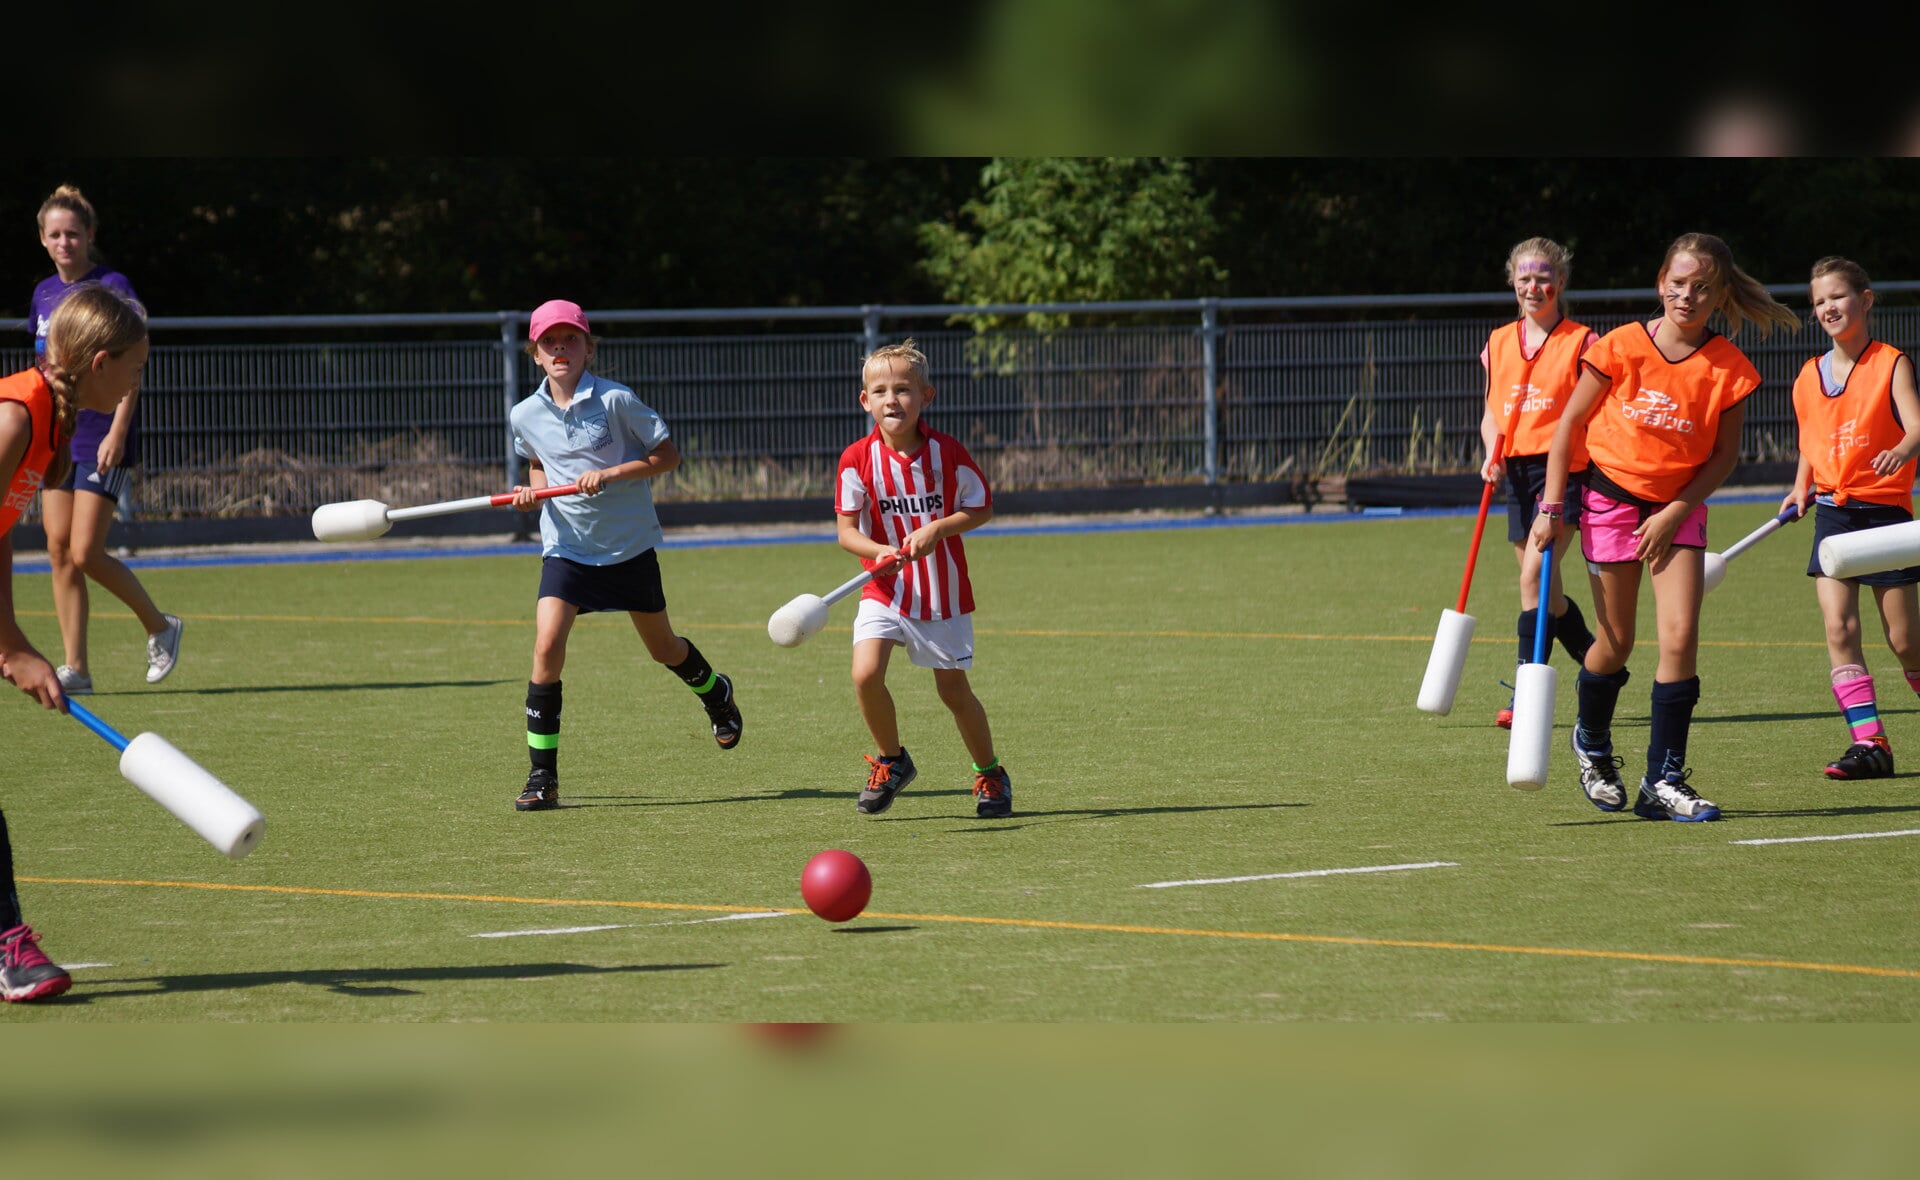 De jeugd vermaakte zich zaterdagmiddag prima tijdens de hockeyclinic voor het goede doel op het terrein van HCL in Liempde. (Foto: Albert Stolwijk).